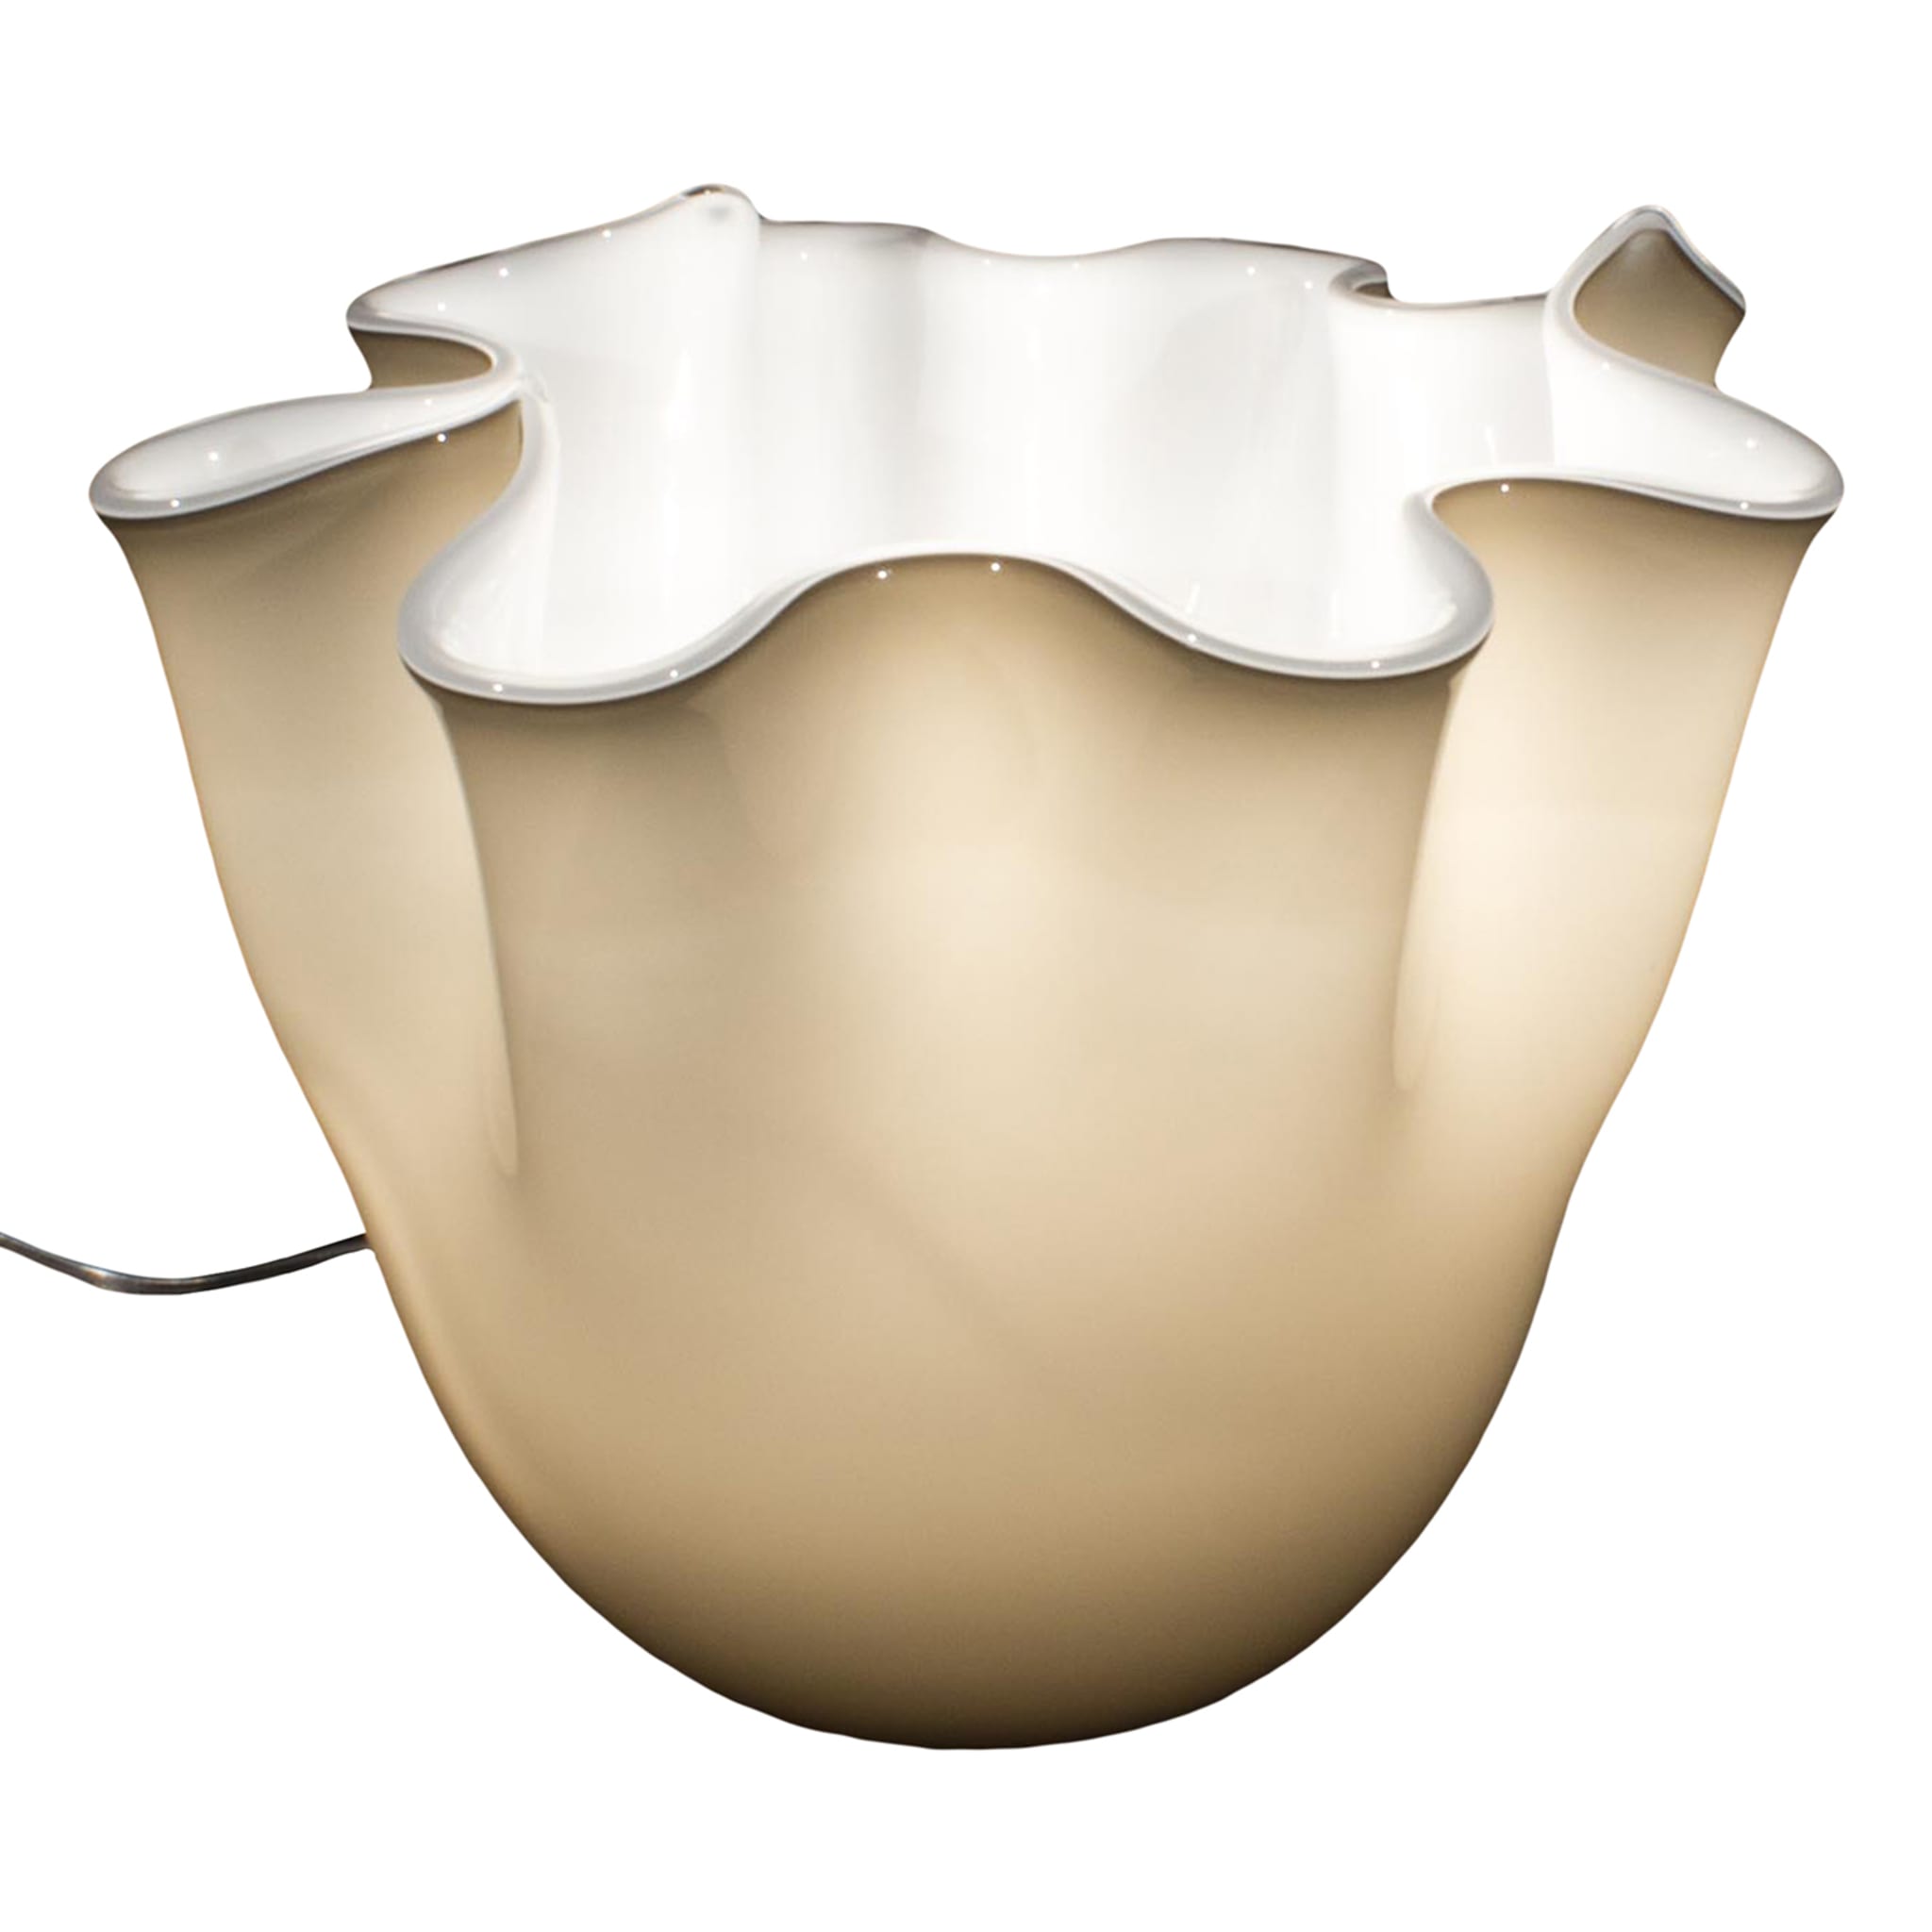 Fazzoletto White Table Lamp - Main view